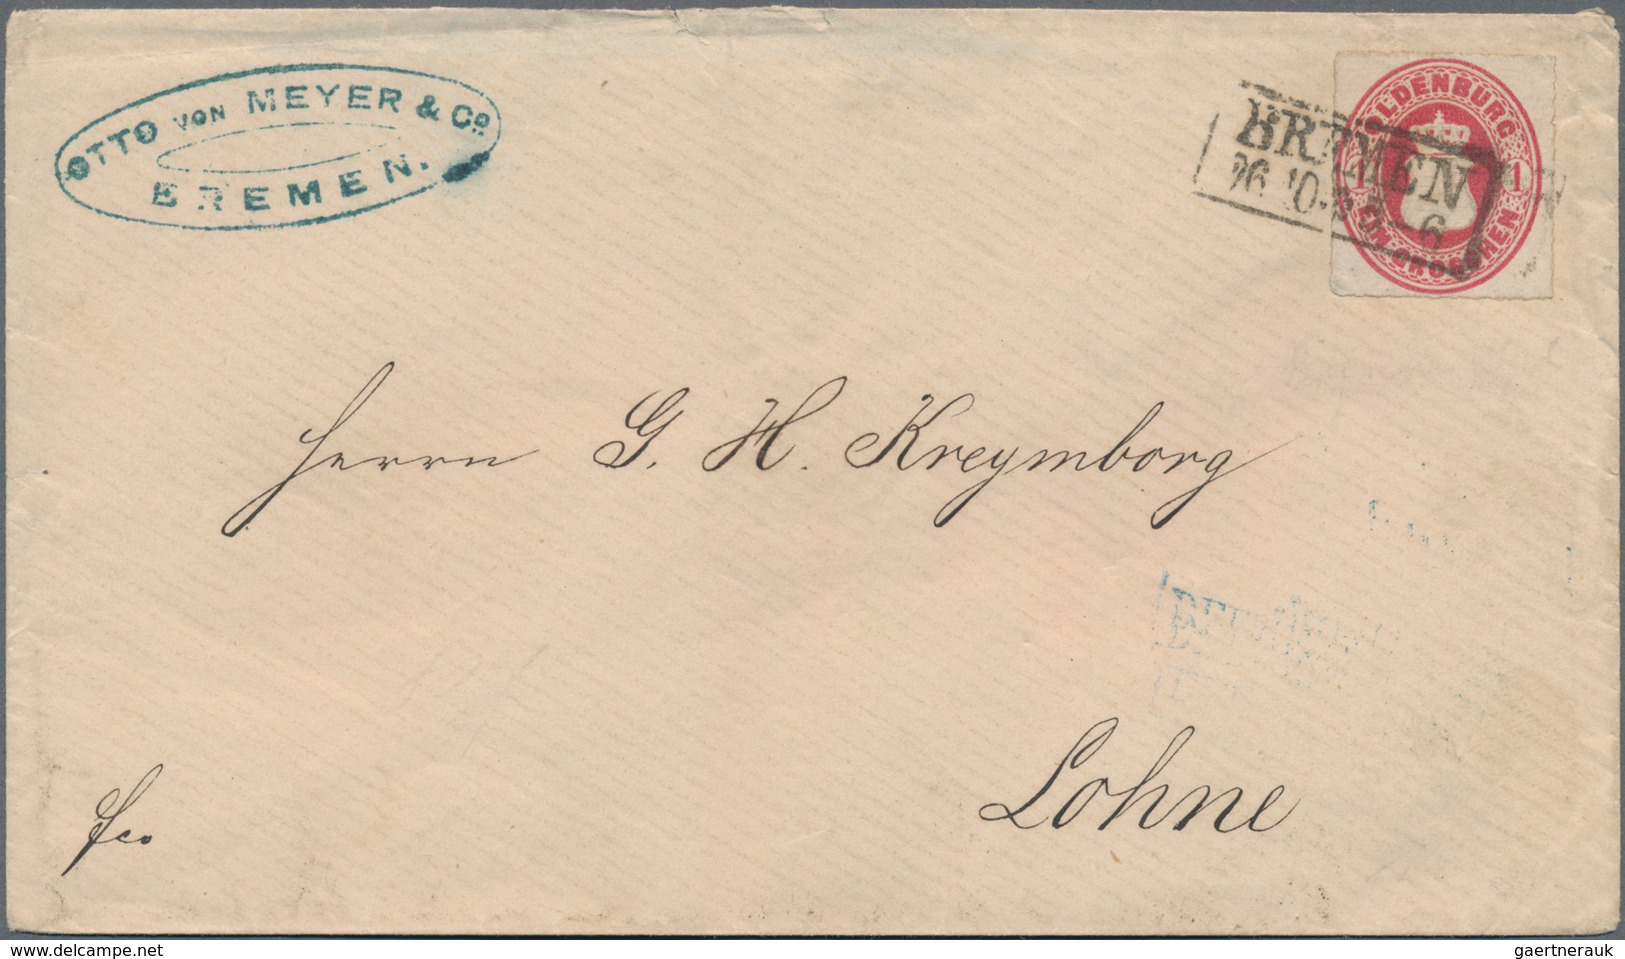 Oldenburg - Marken und Briefe: 1862 1 Gr karmin auf 8 Briefen u. einer Vorderseite, beide Trennungsa